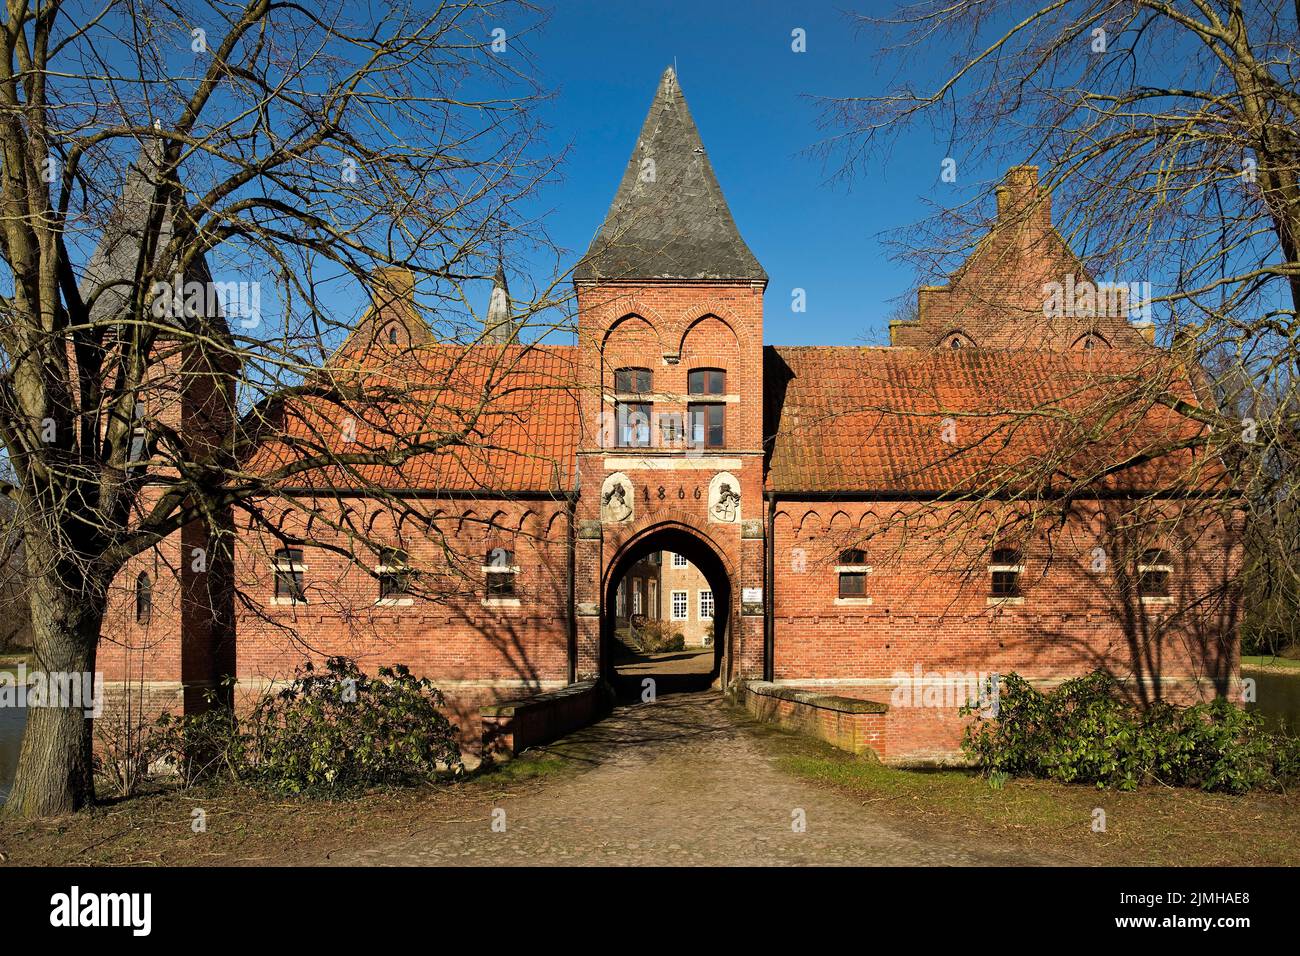 Haus Egelborg, château amarré à Legden, Muensterland, Rhénanie-du-Nord-Westphalie, Allemagne, Europe Banque D'Images